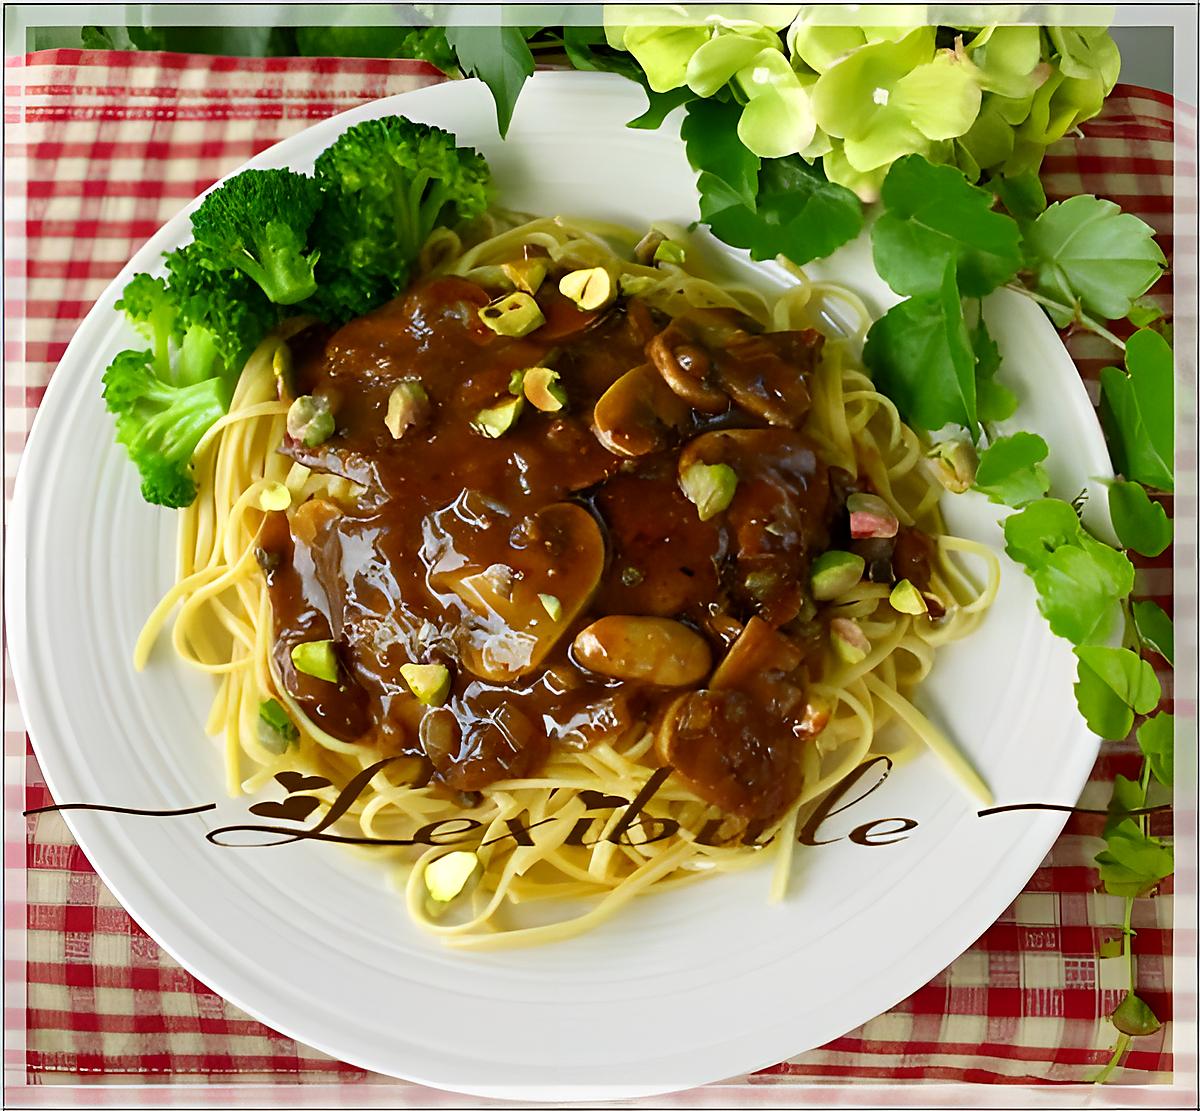 recette Escalopes de veau, sauce poivre-champignons